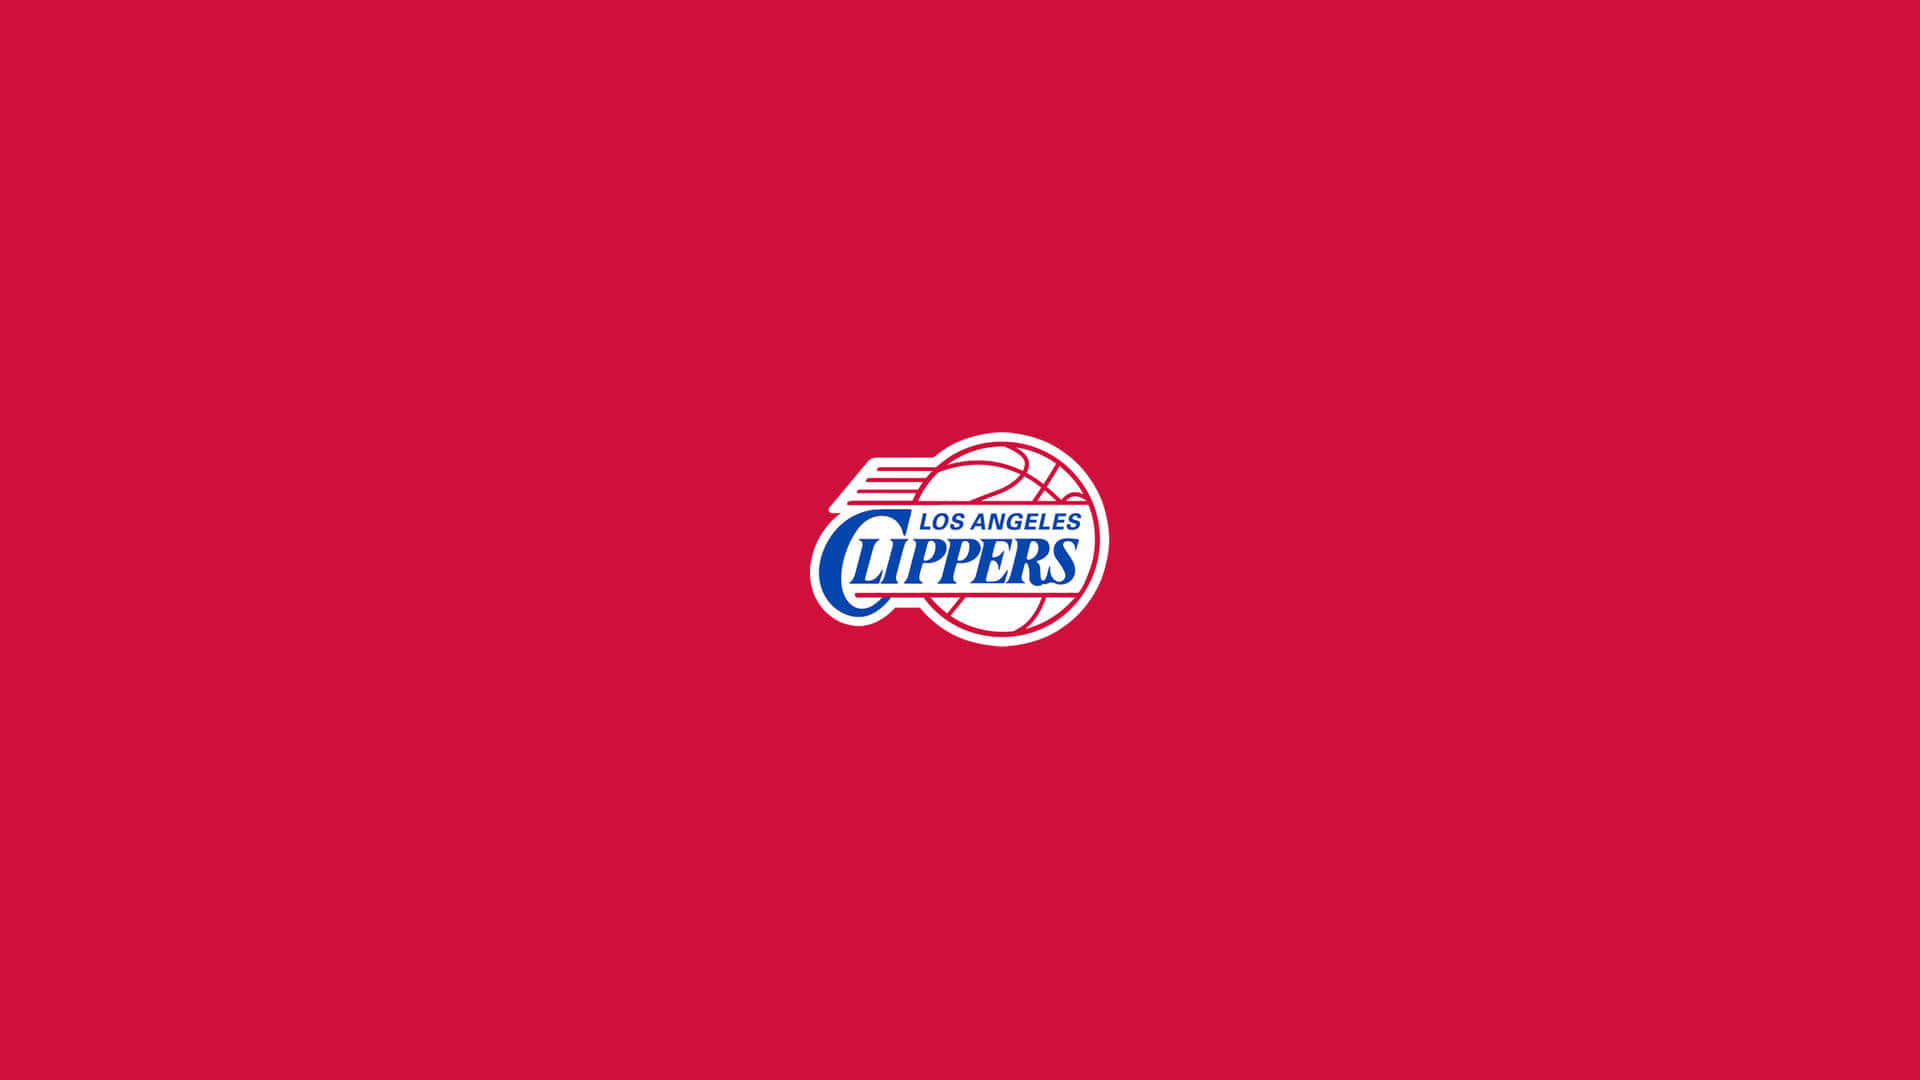 Röttminimalistiskt Nba-lag La Clippers-logga. Wallpaper